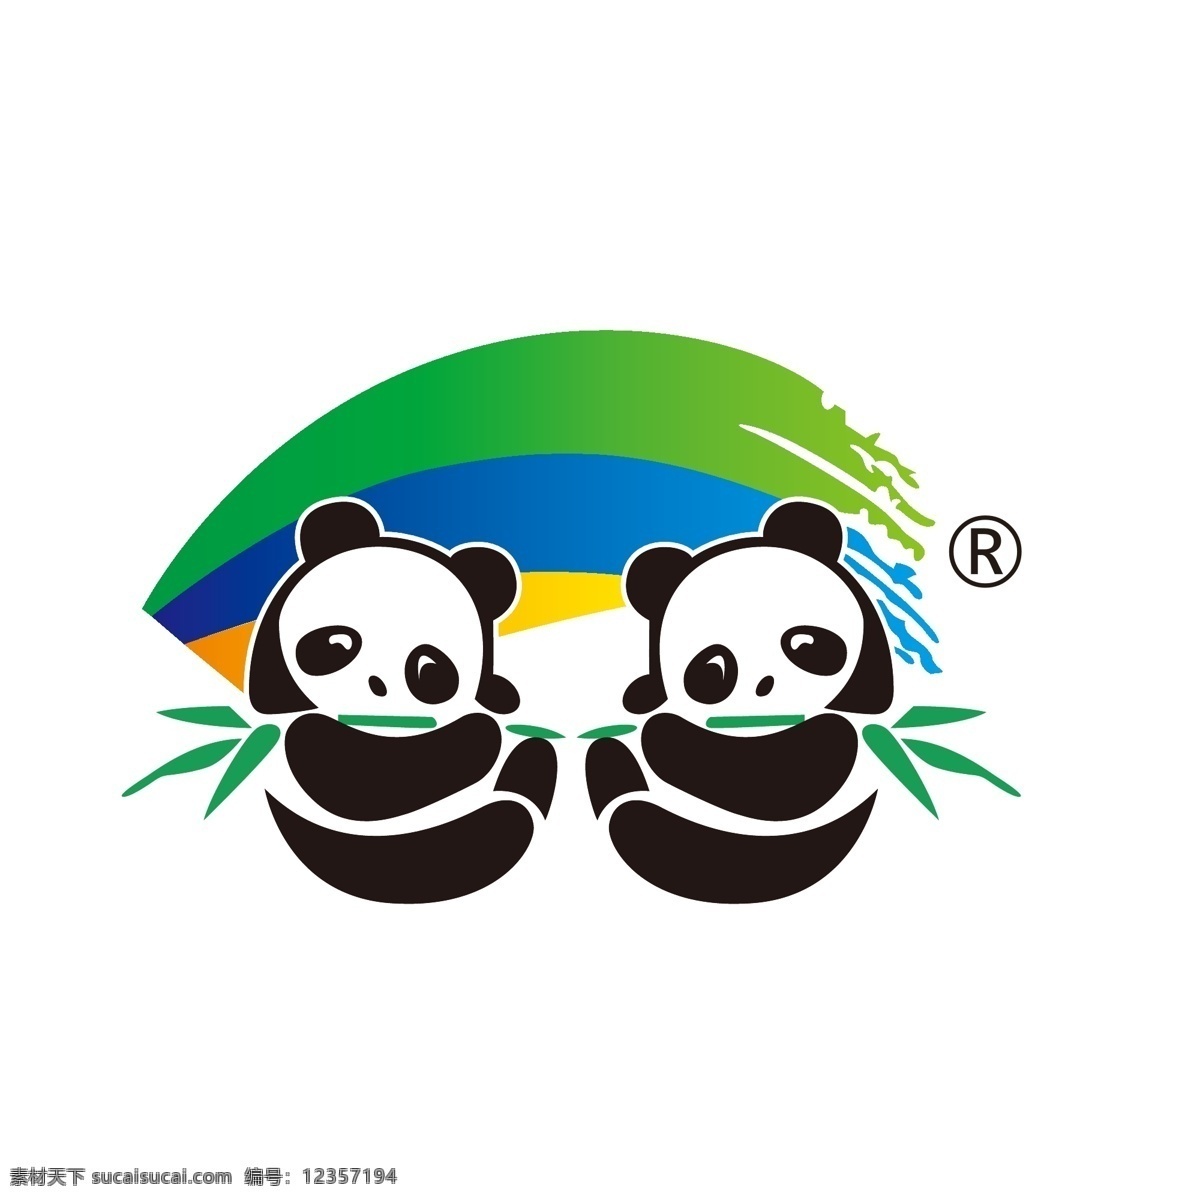 双 熊猫 商标 双熊猫 双熊猫标志 双熊猫商标 商标设计 商标素材 标志 熊猫标志 双熊猫品牌 logo设计